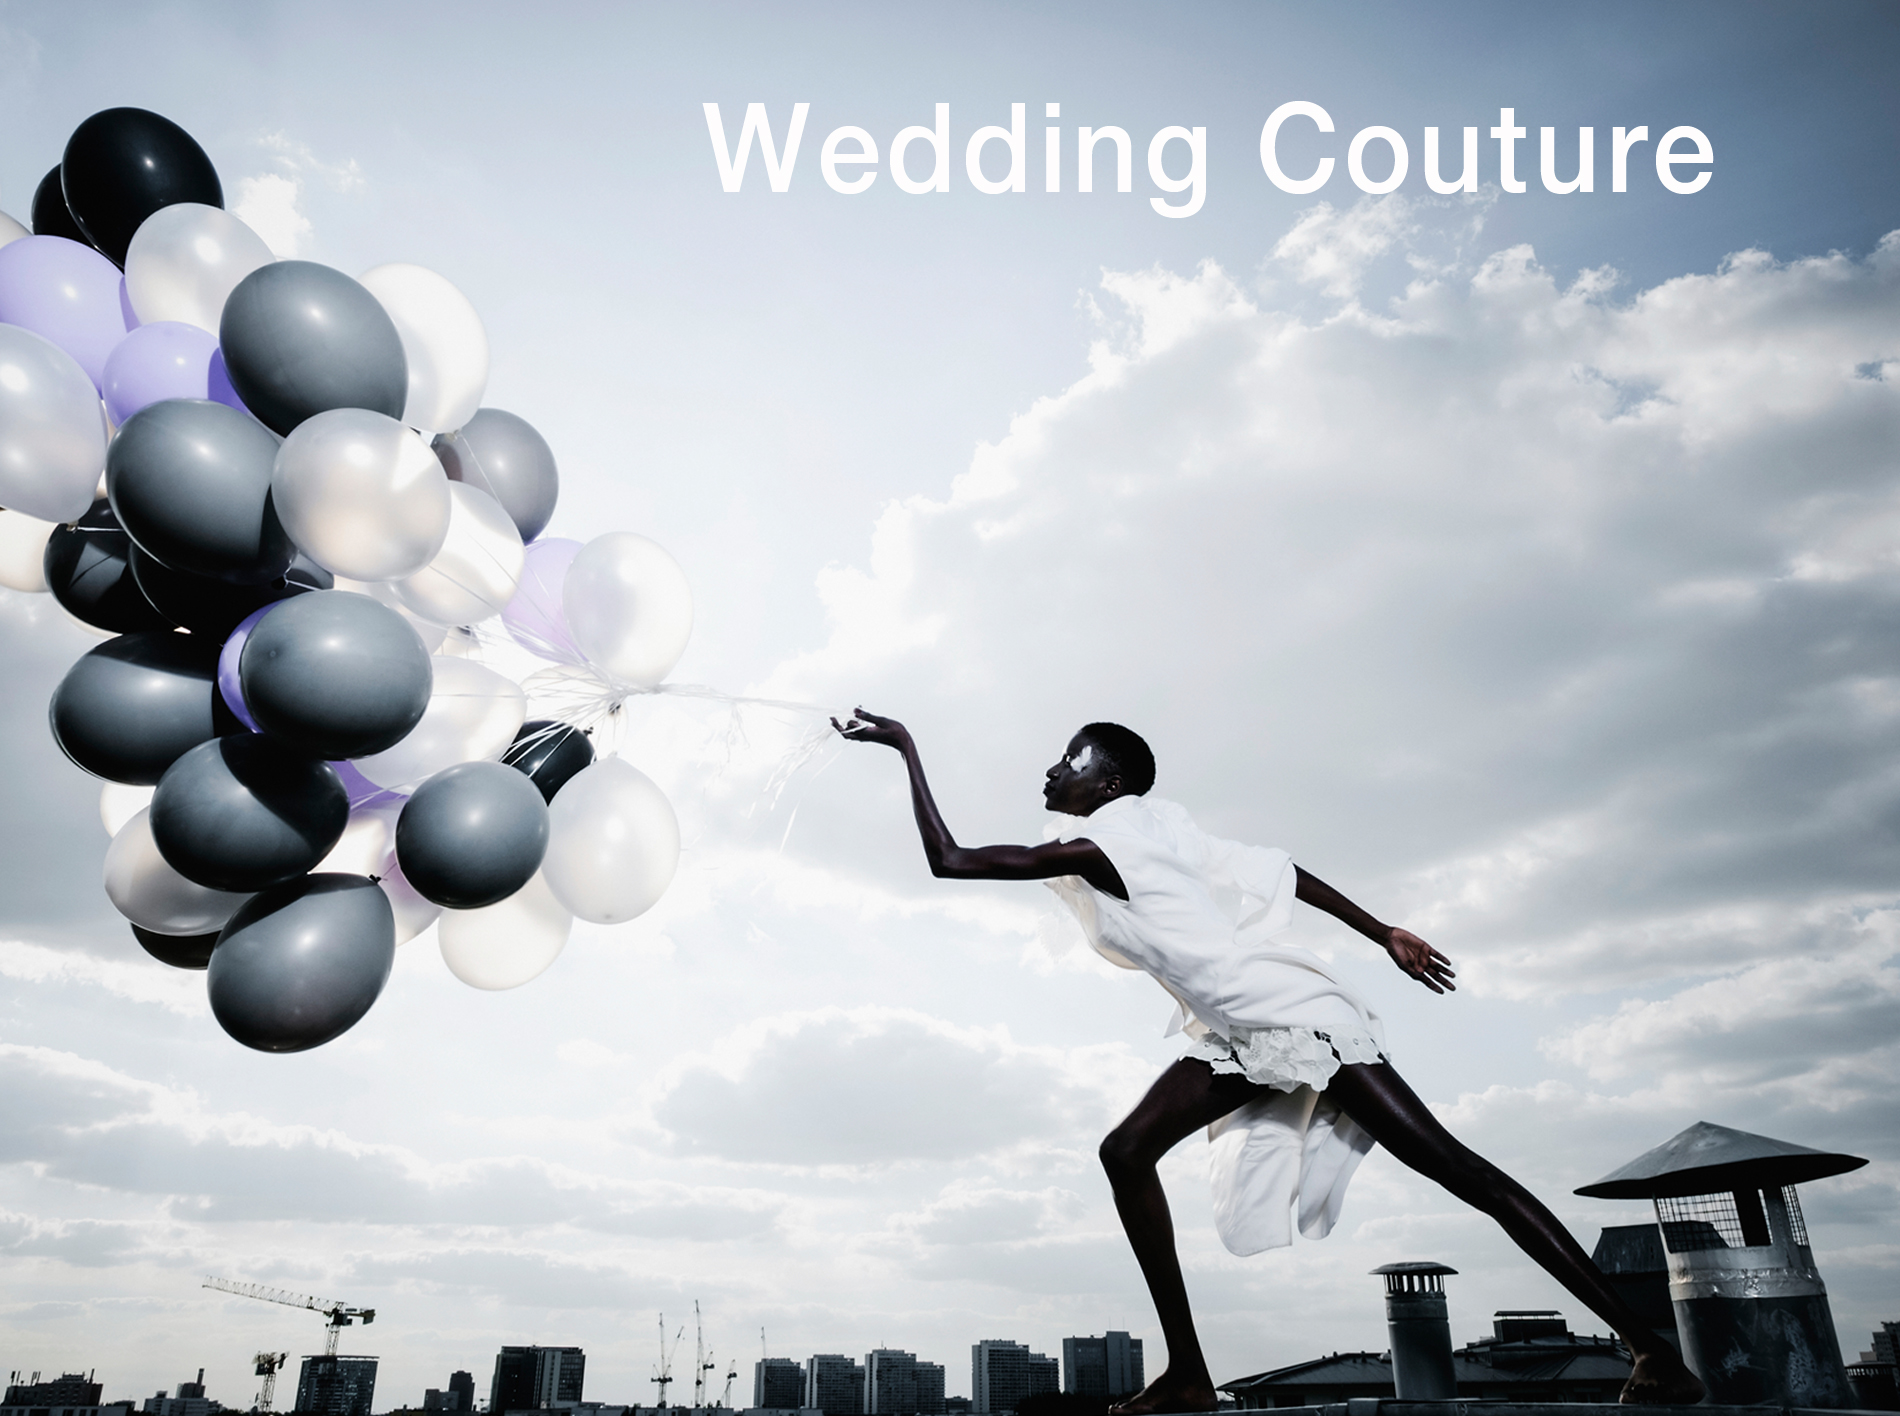 Wedding Couture Looks, die alles andere als klassisch und traditionell sind